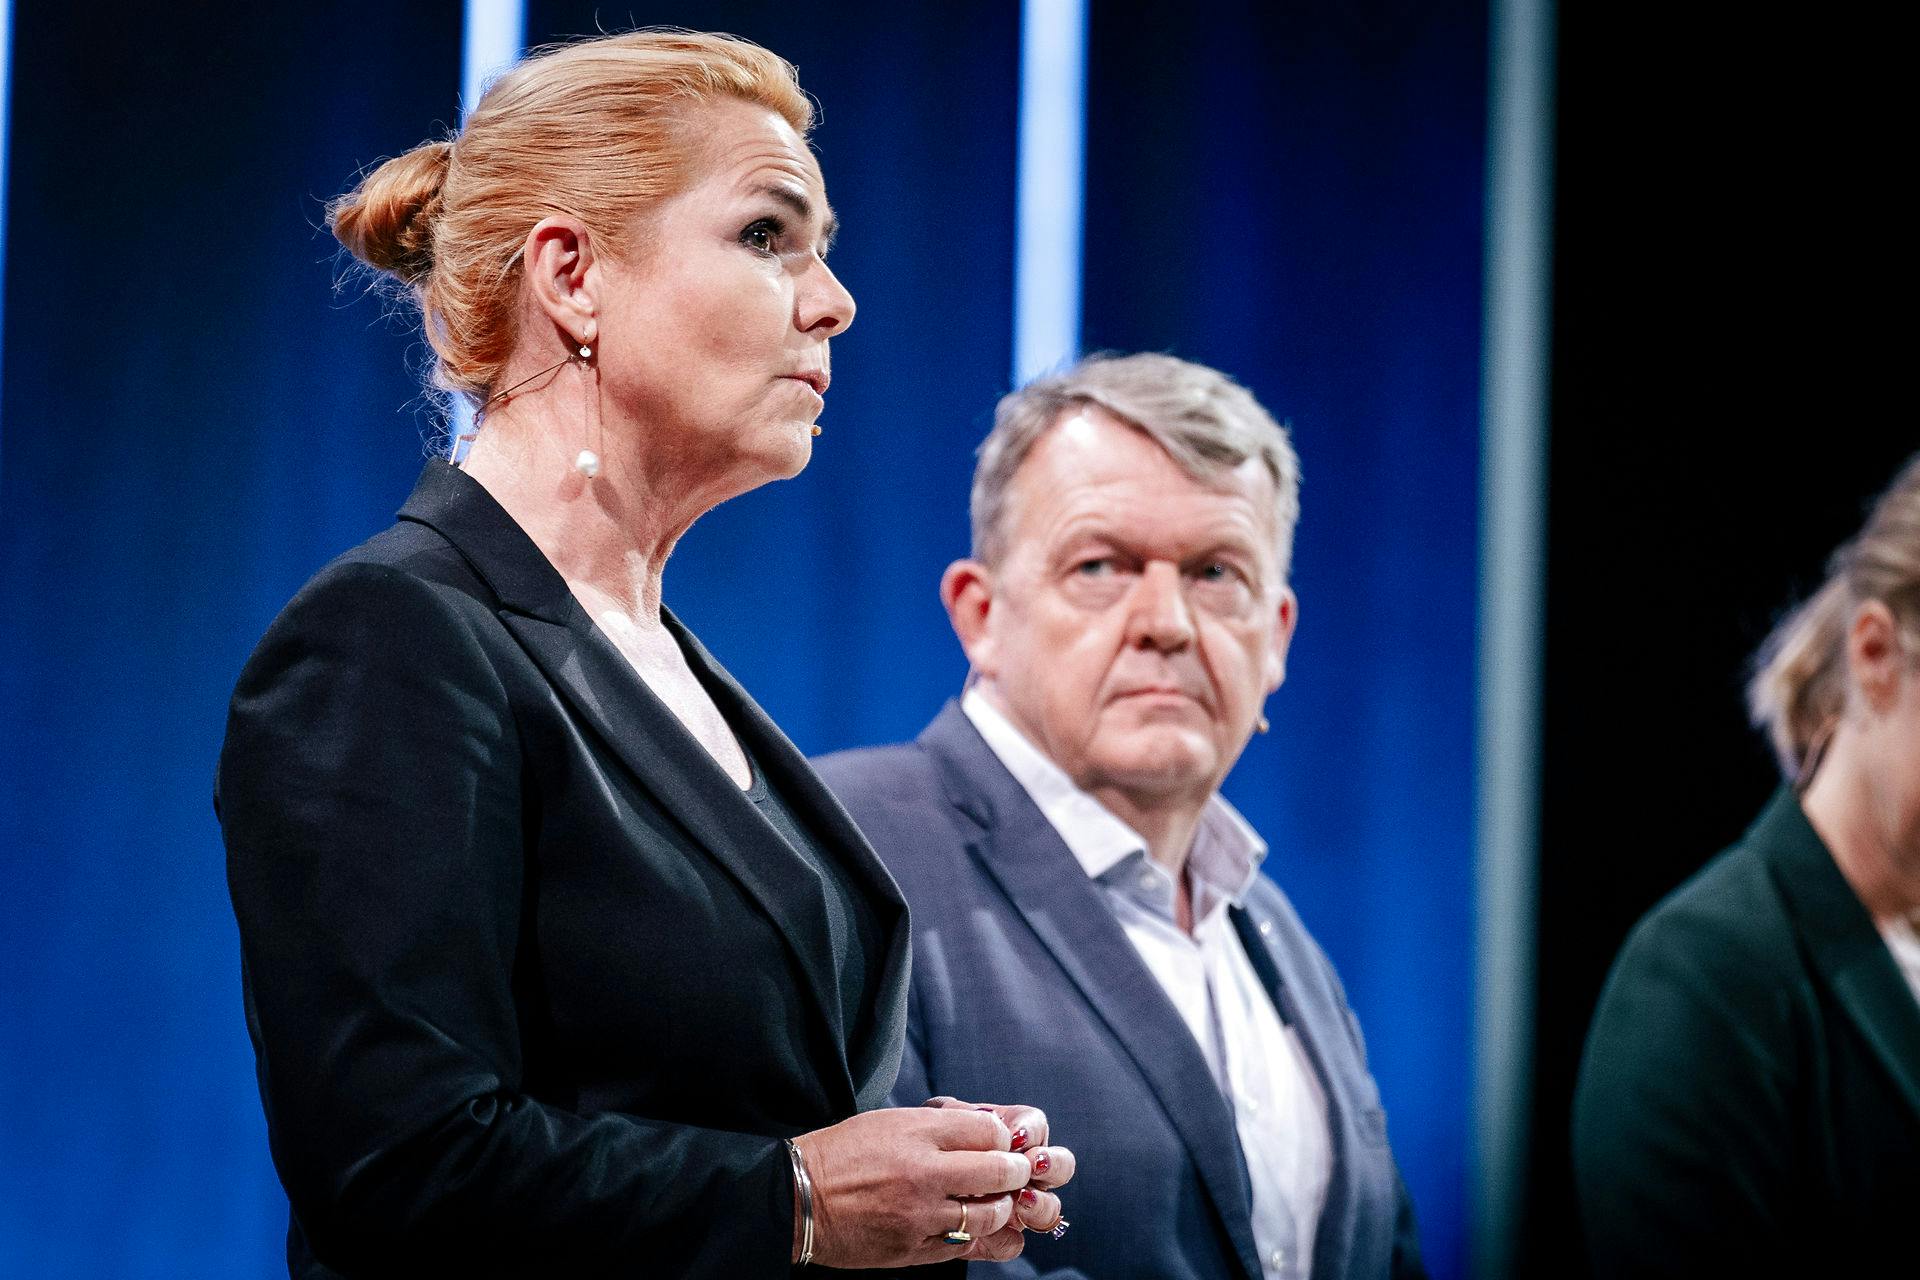 Nej, Lars, du behøves ikke spørge. For Inger Støjberg nægter at gøre dig til statsminister.